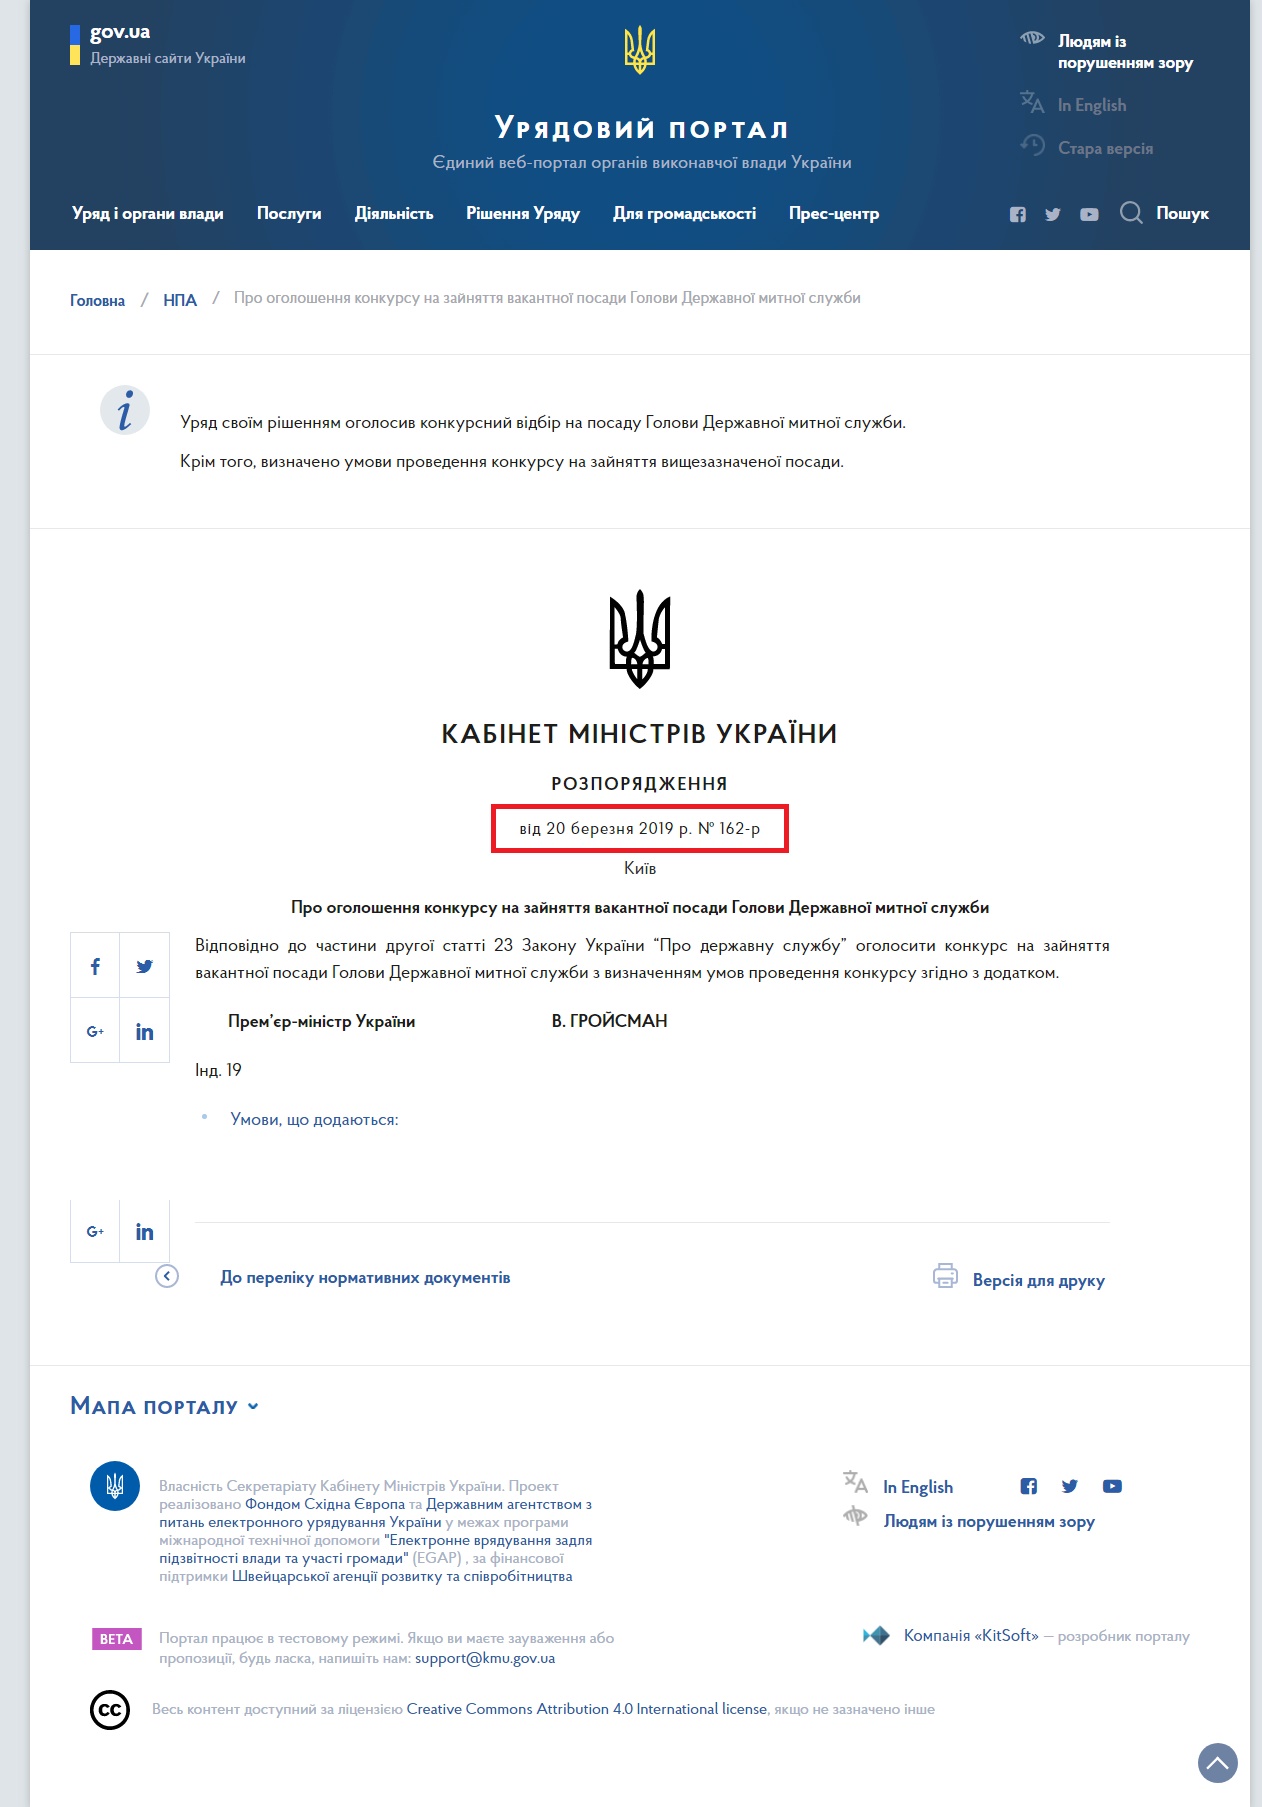 https://www.kmu.gov.ua/ua/npas/pro-ogonyattya-vakantnoyi-posadi-golovi-derzhavnoyi-mitnoyi-sluzhbi